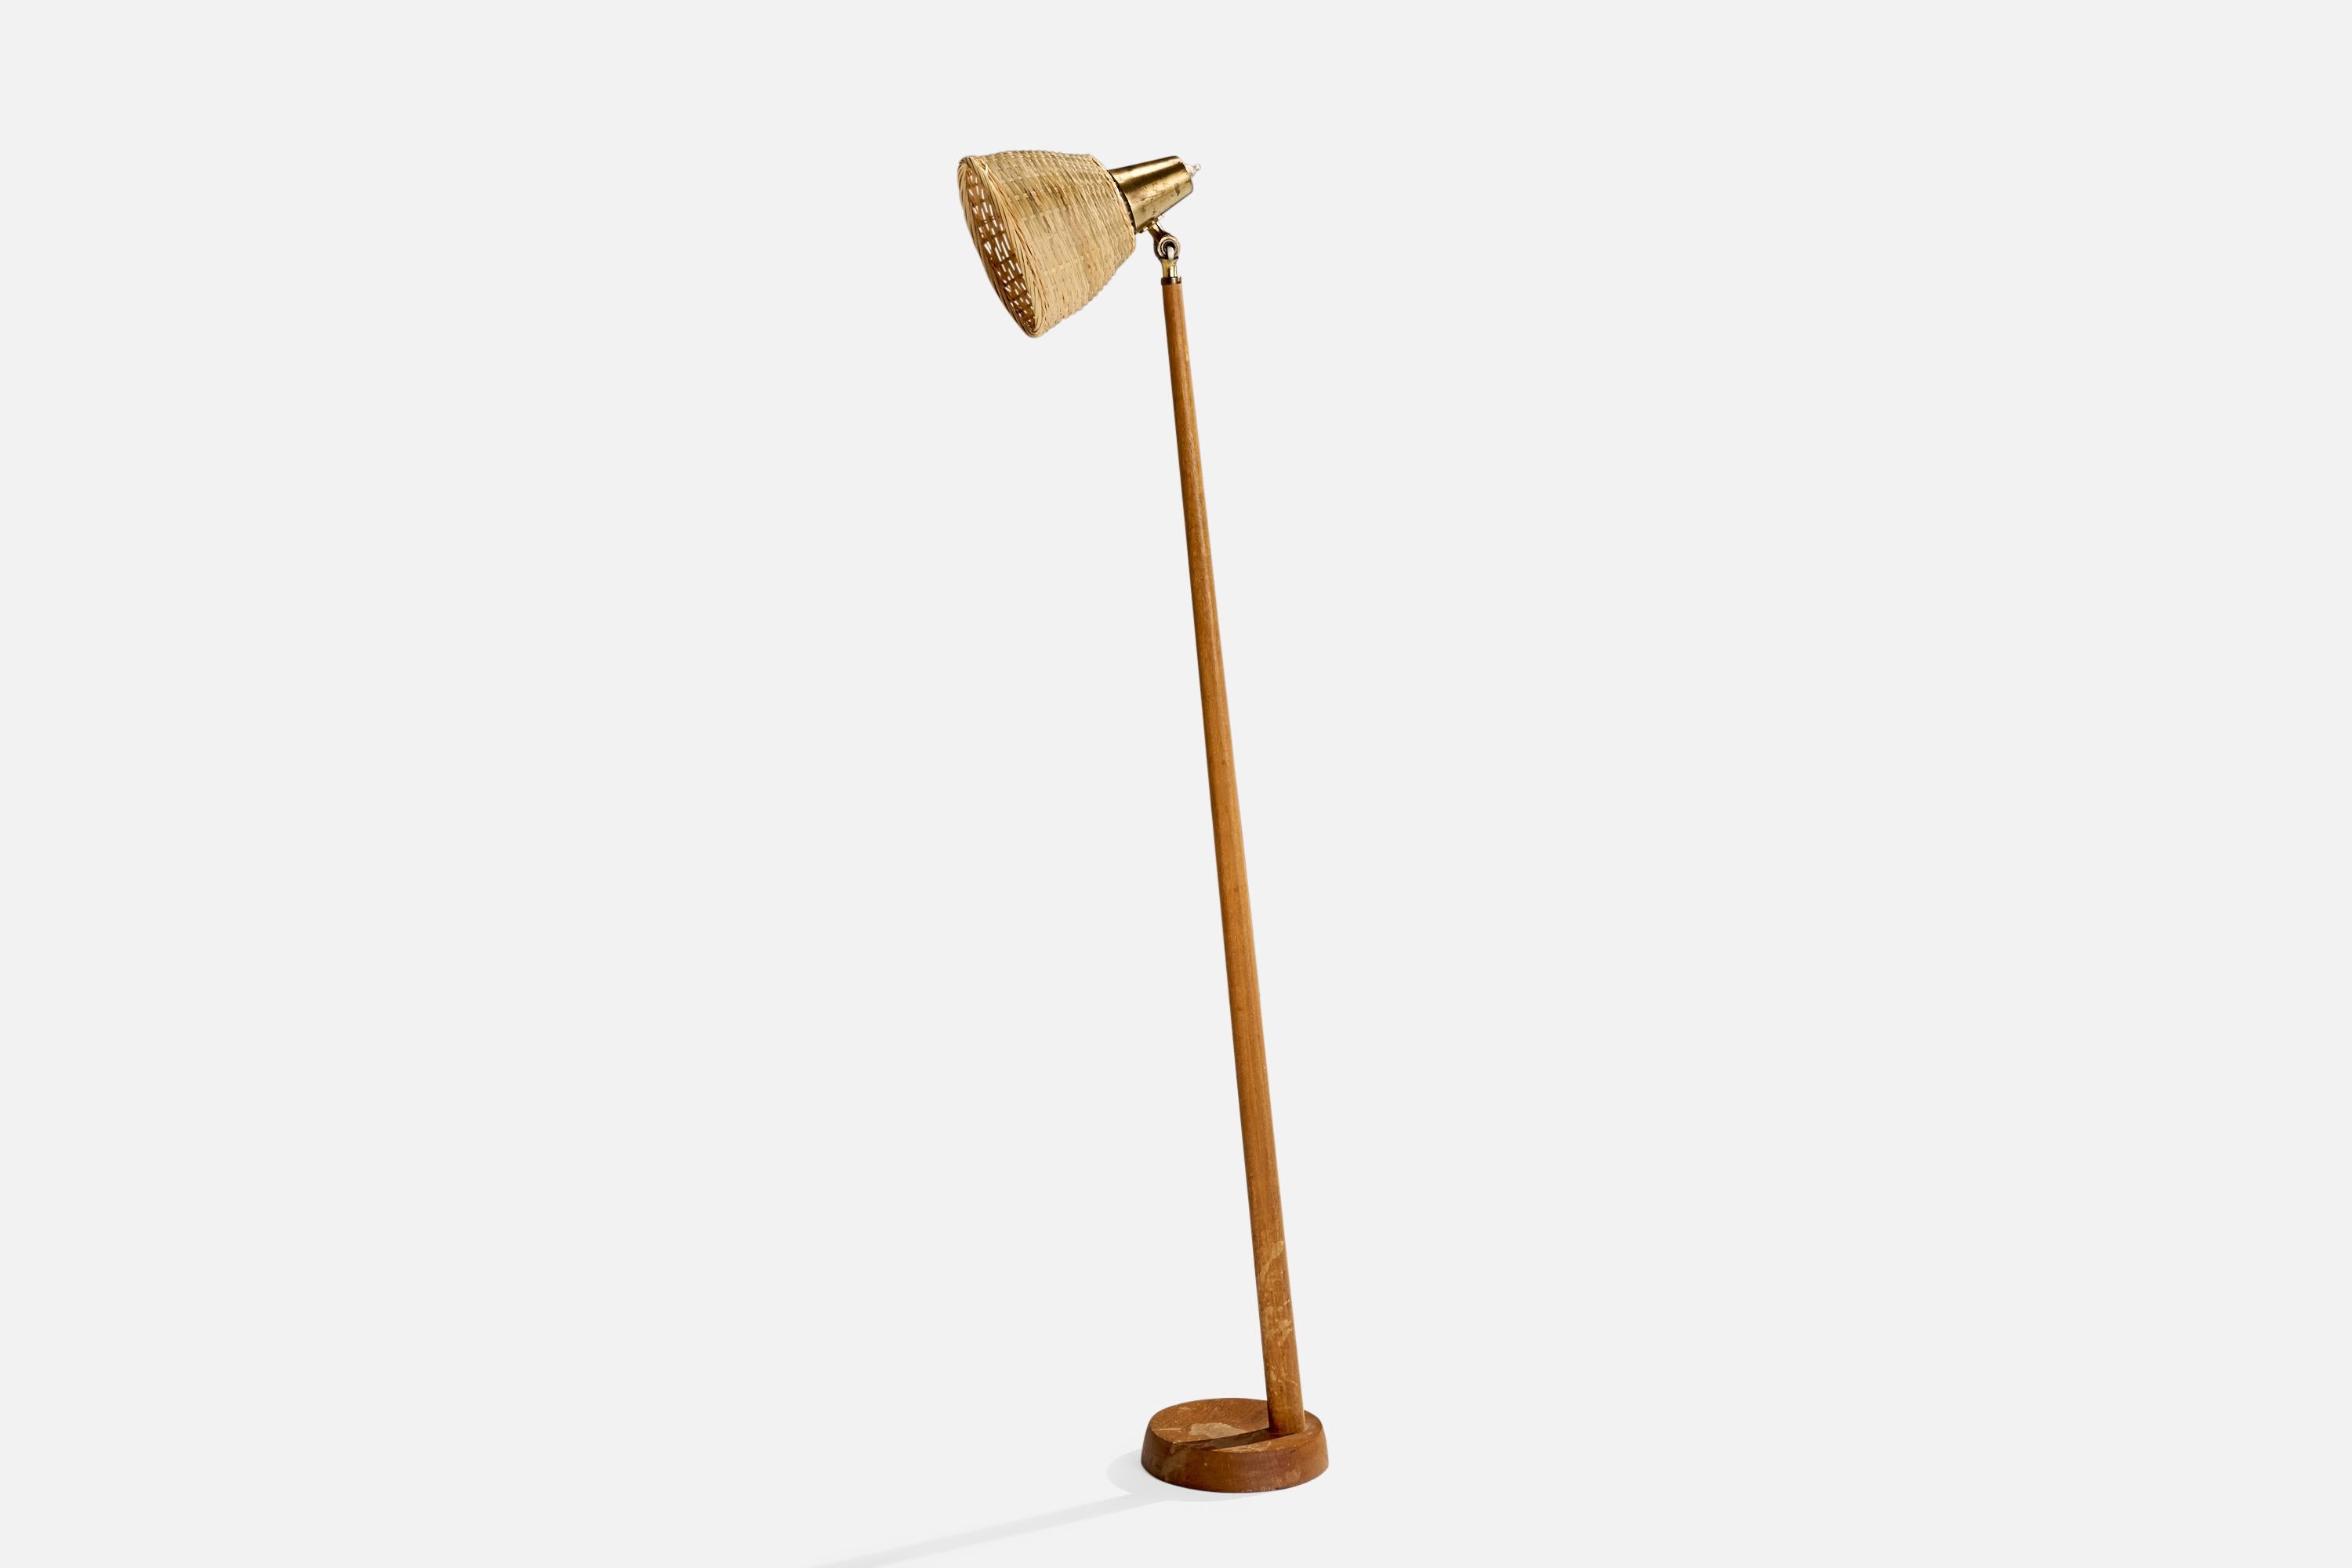 Lampadaire réglable en laiton, chêne et rotin, conçu et produit par Falkenbergs Belysning, Suède, années 1960.

Dimensions globales (pouces) : 49.22